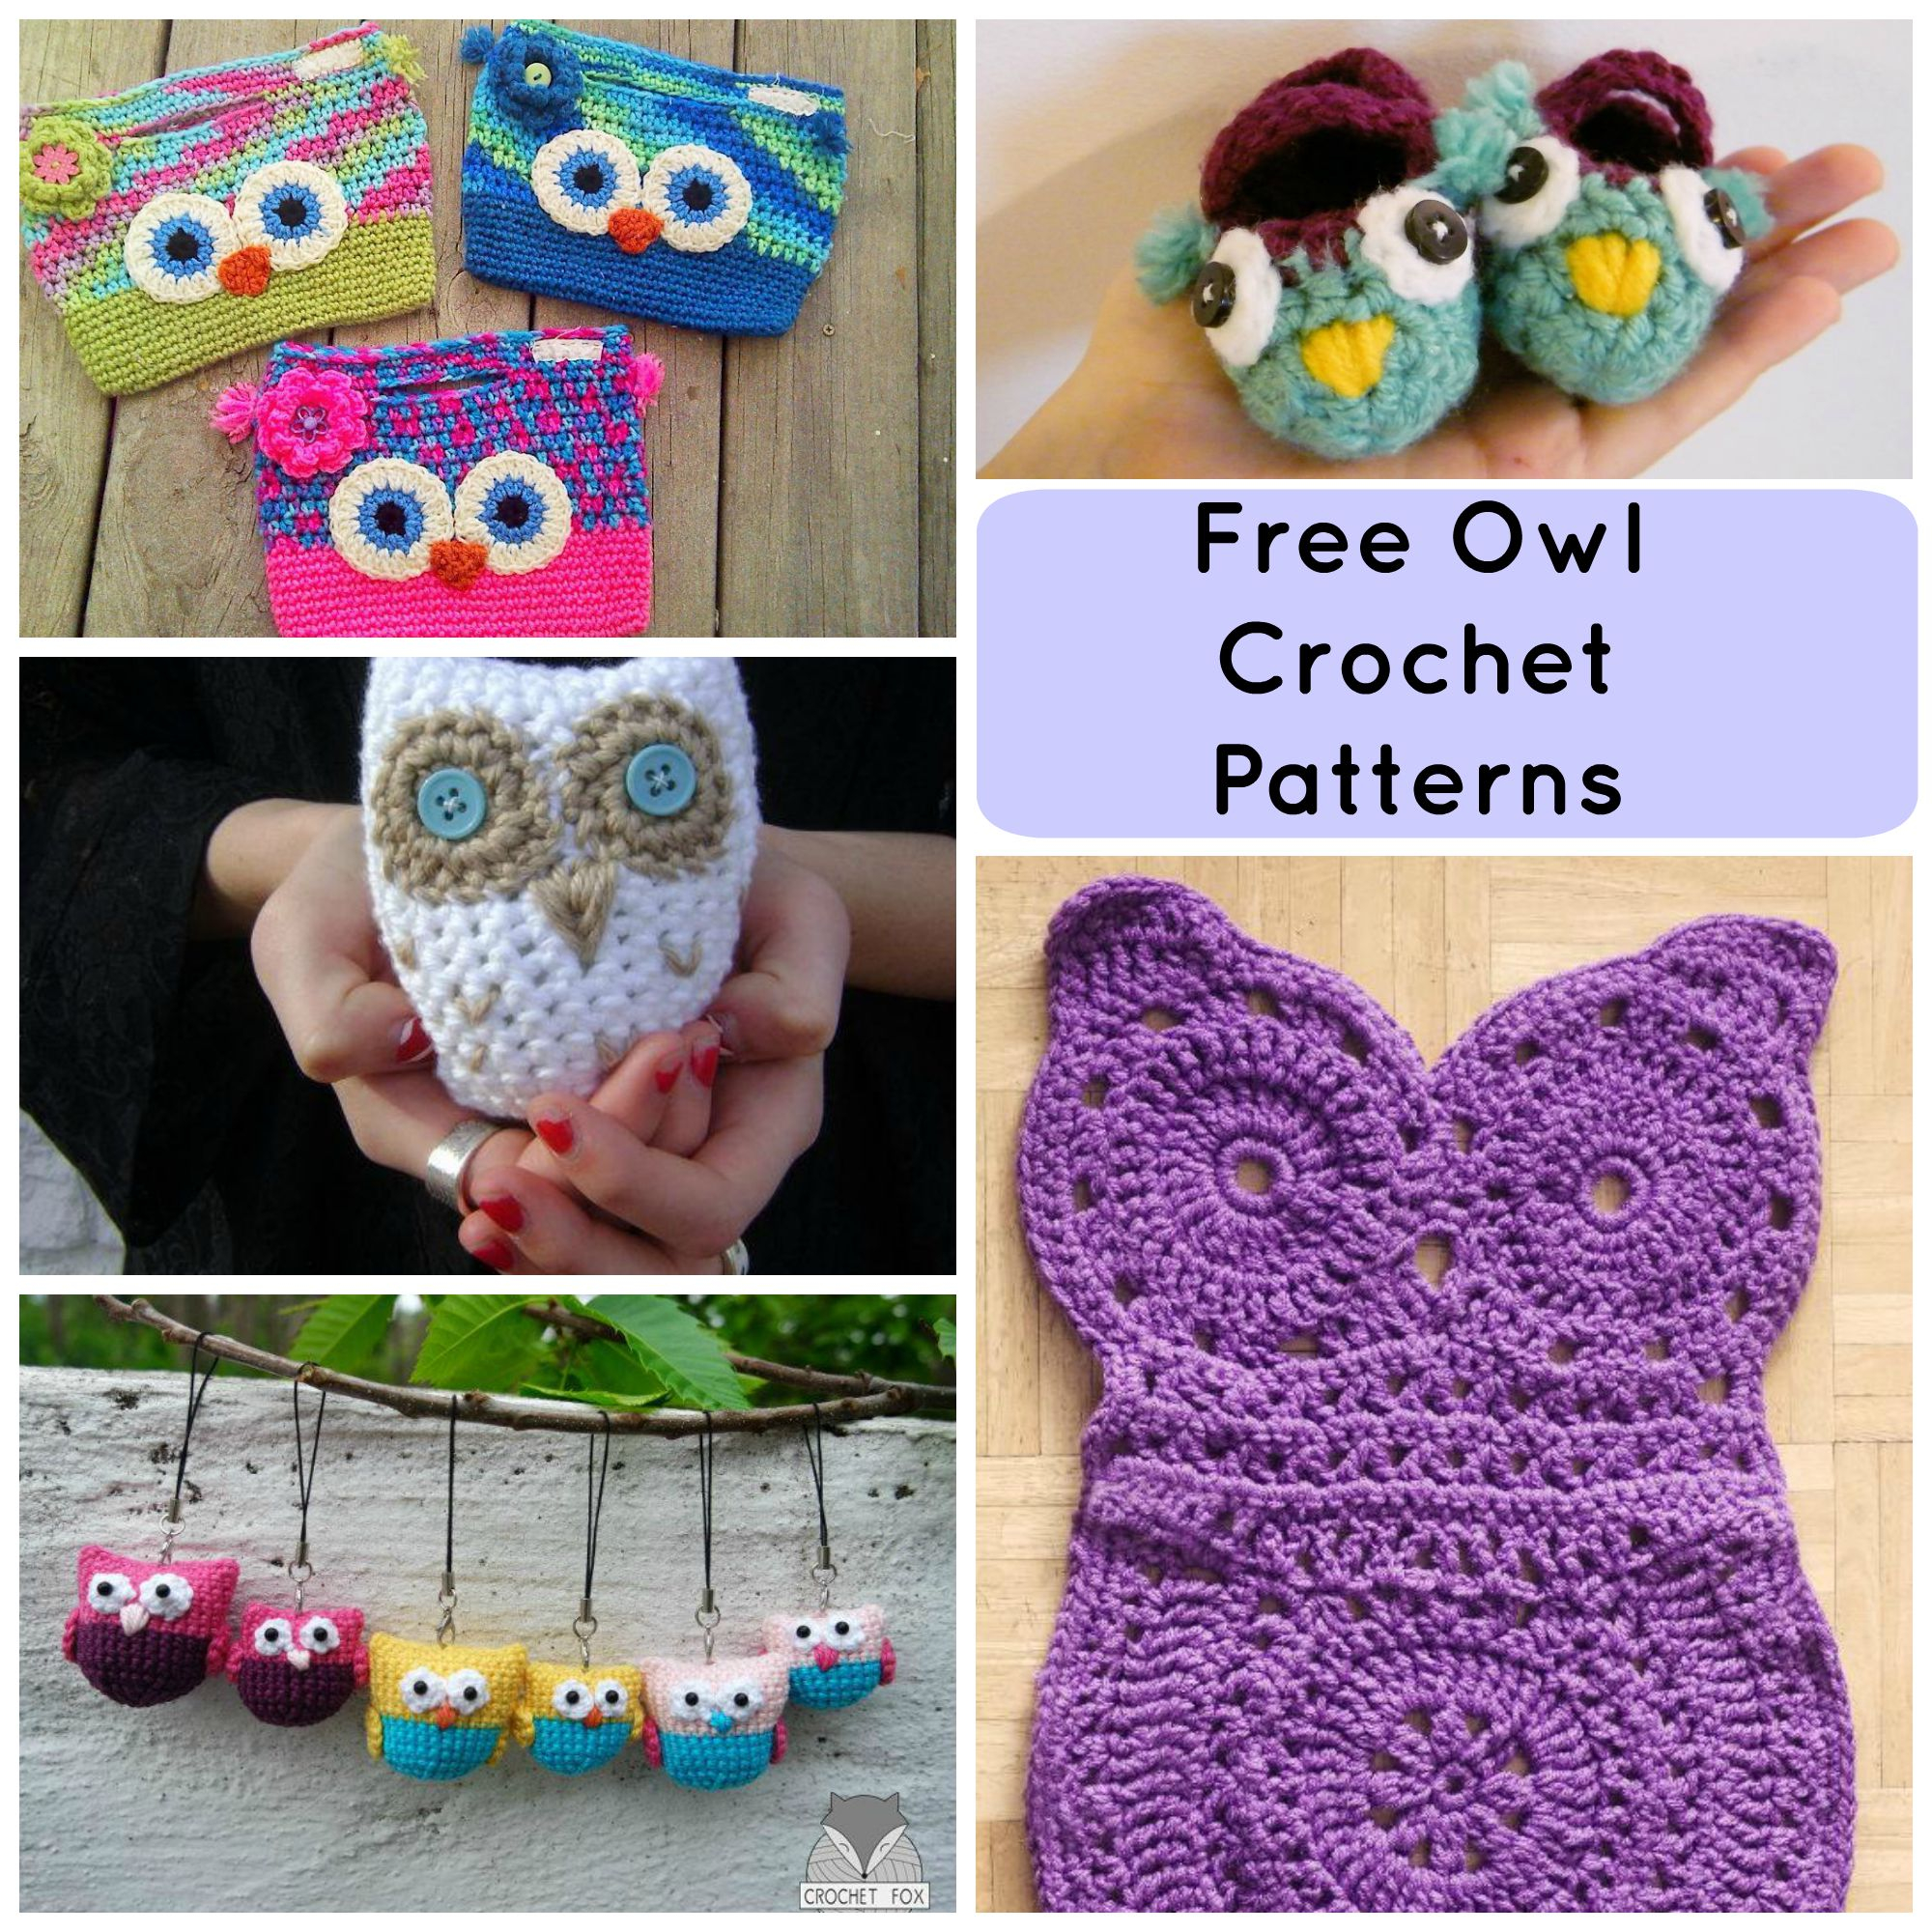 Free Crochet Pattern 7 Hoot Worthy Free Crochet Owl Patterns